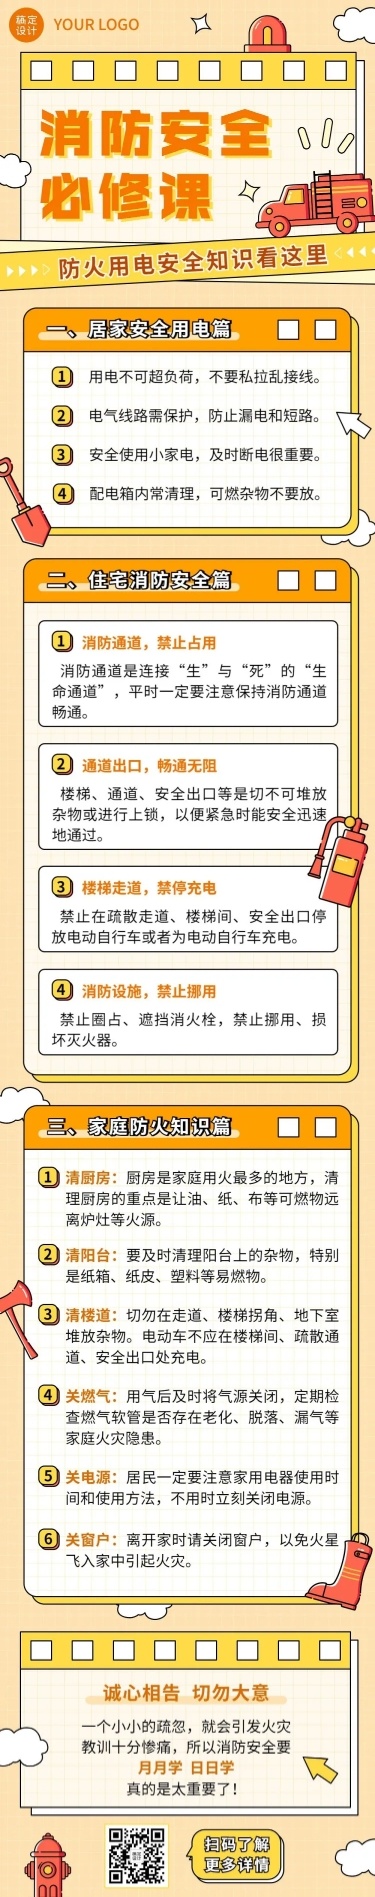 融媒体社区消防安全日常生活知识科普文章长图